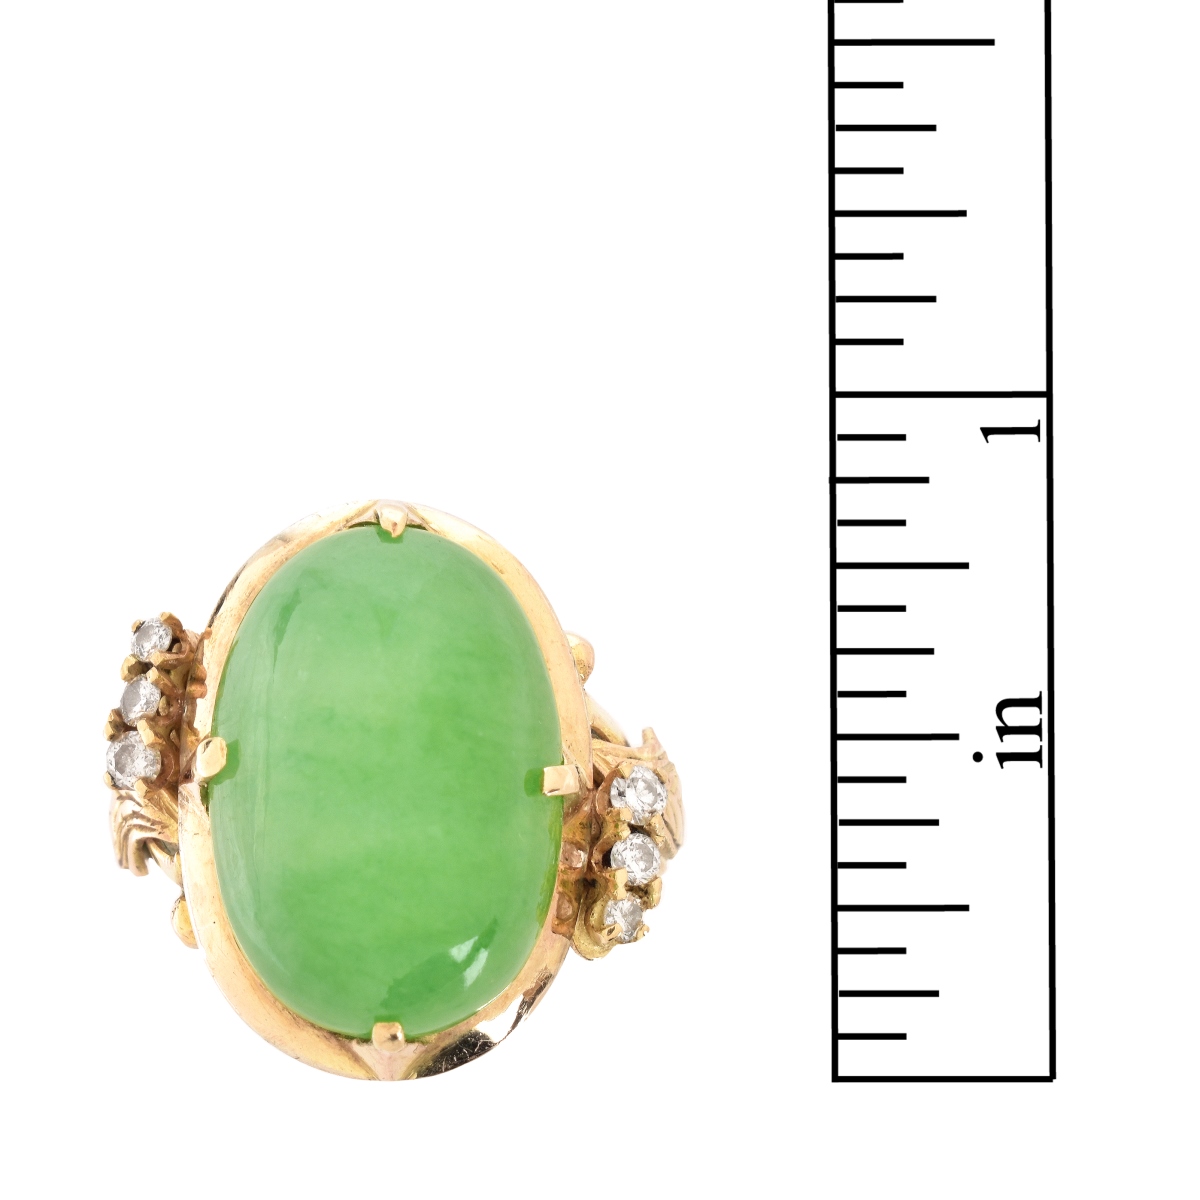 Natural Jade, Diamond and 14K Ring